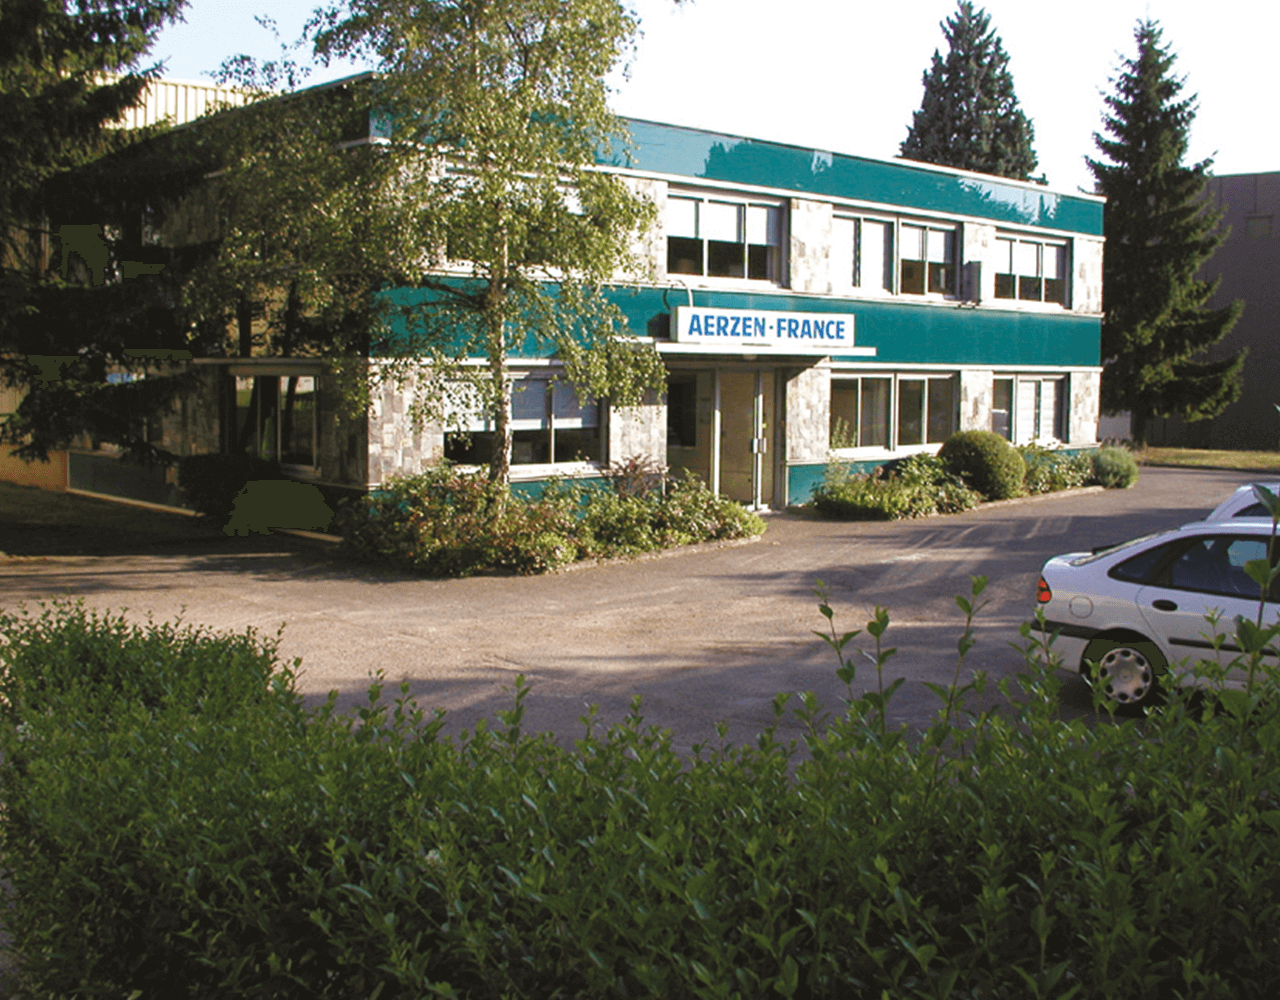 Imaginea clădirii primei filiale înființate de AERZEN în străinătate, în 1969